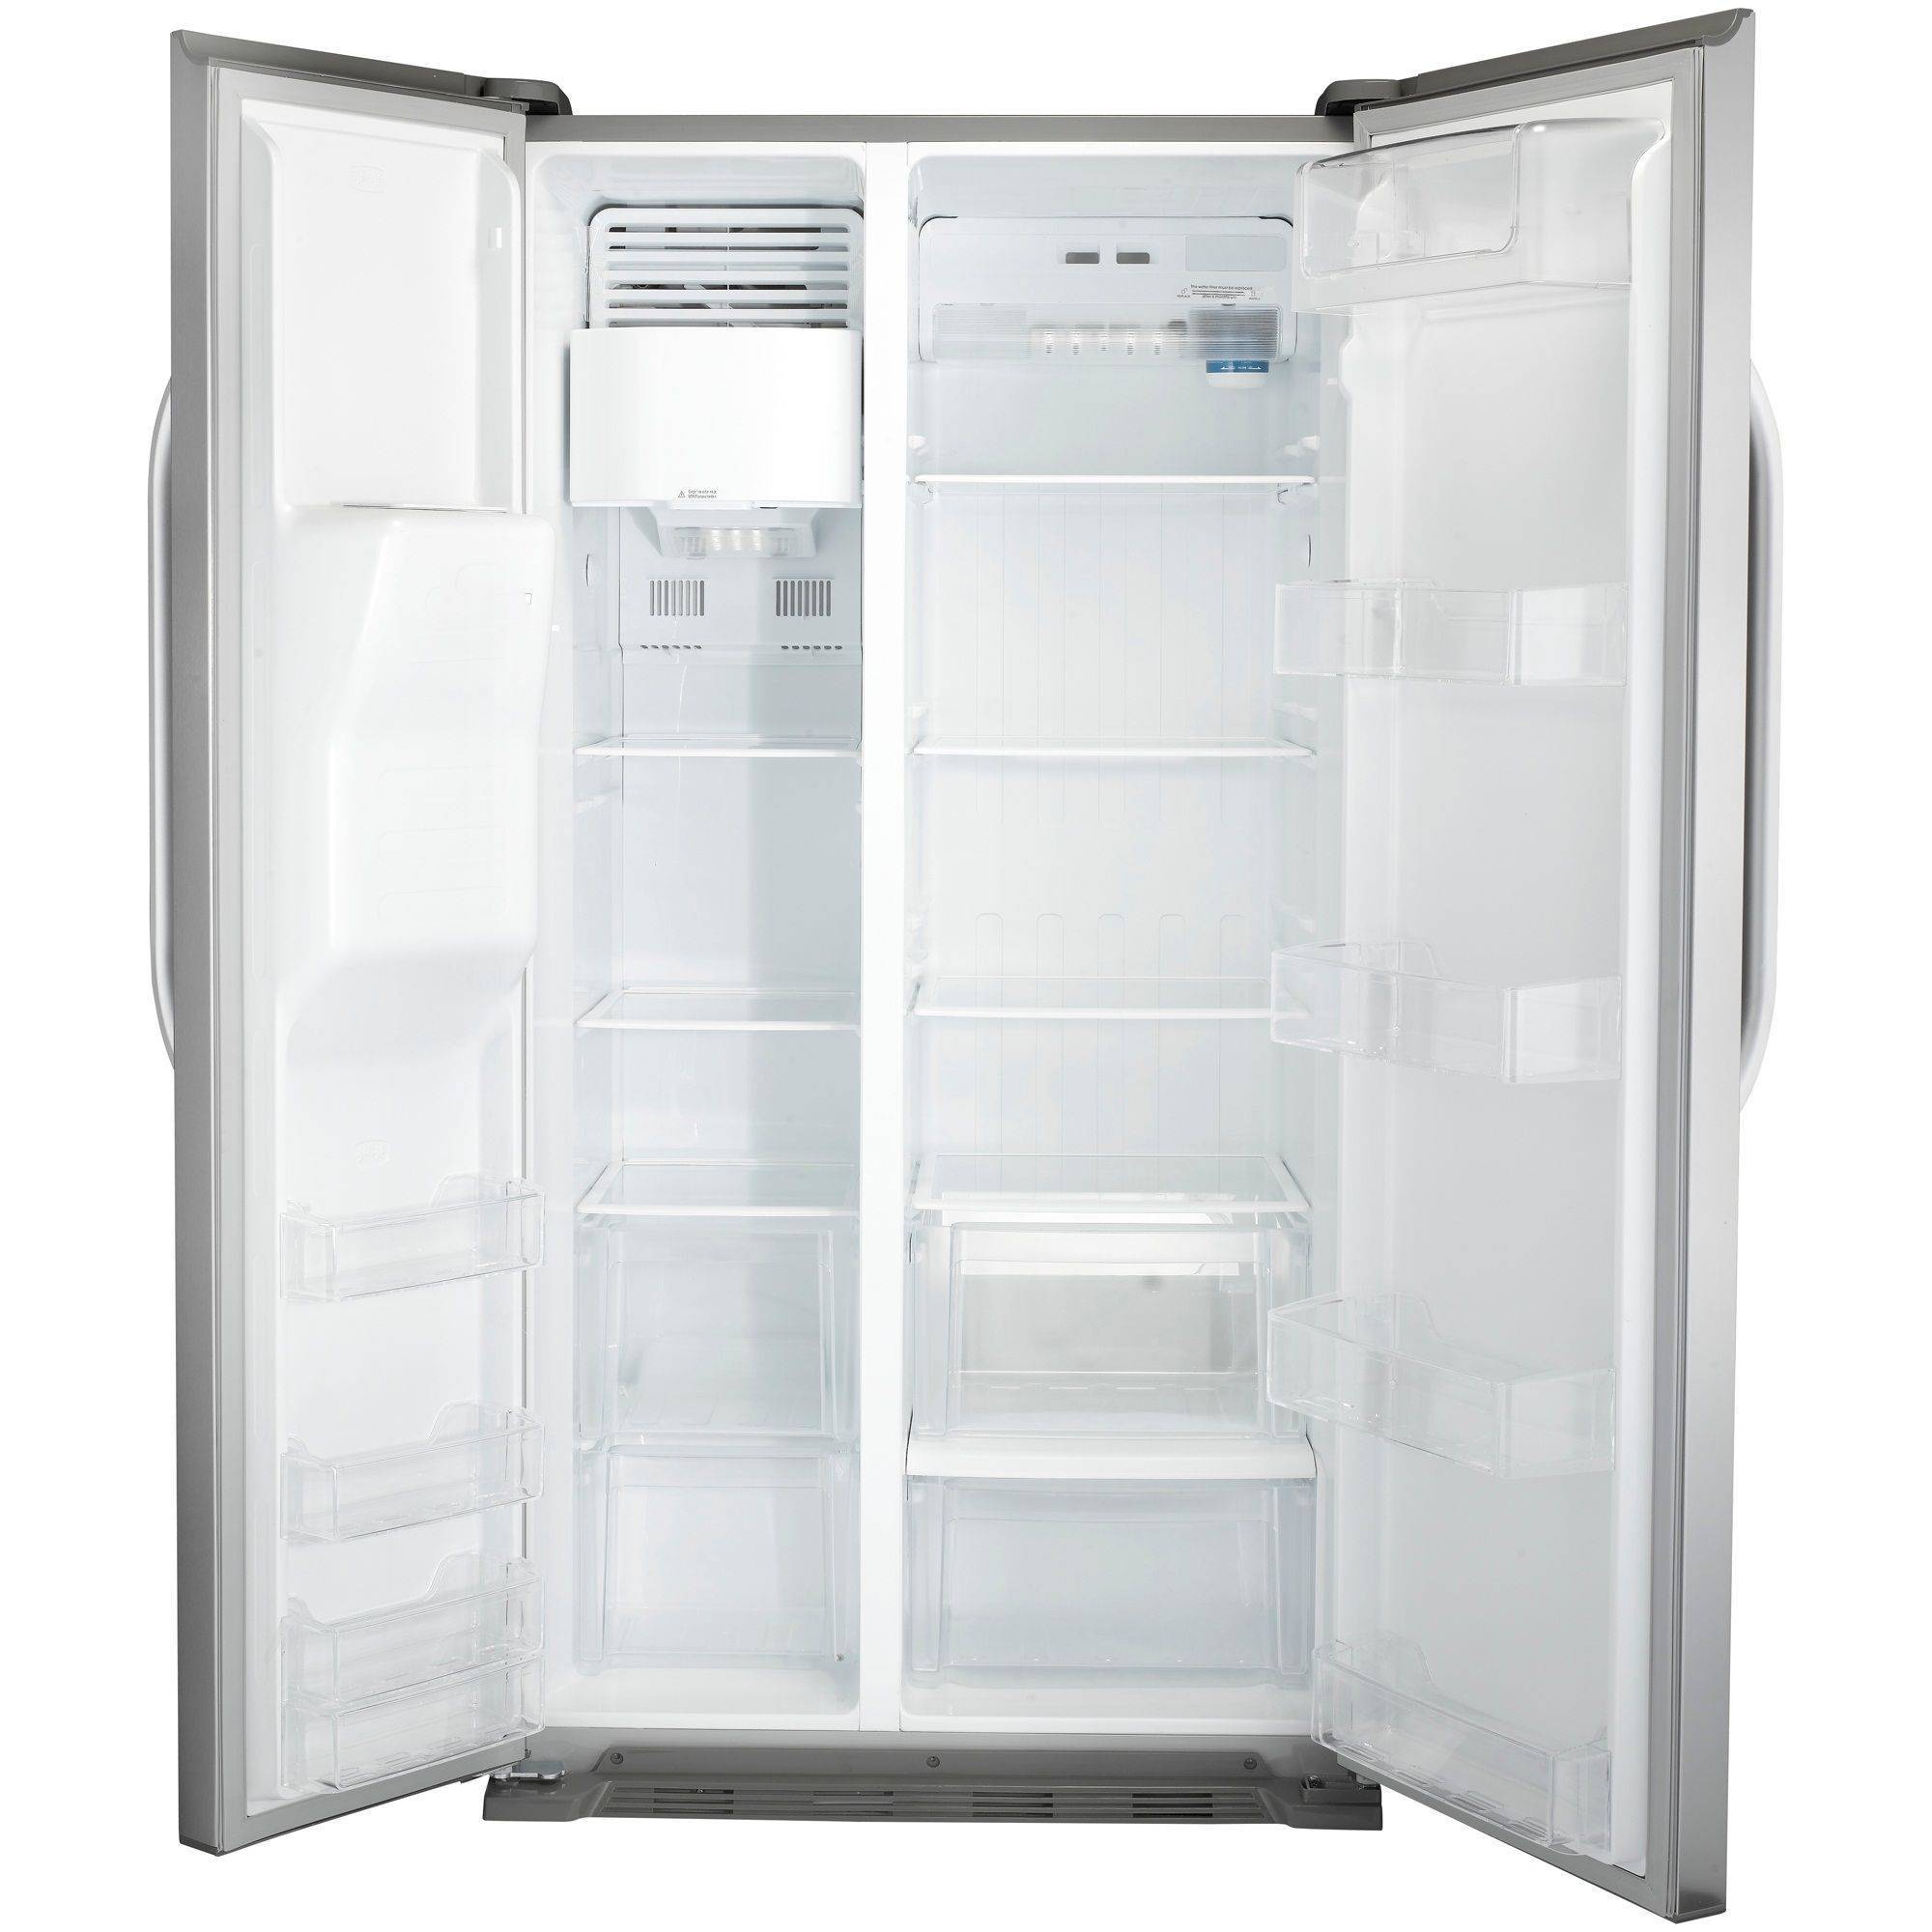 Холодильники ariston: топ-10 лучших моделей, отзывы, советы по выбору оборудования | отделка в доме